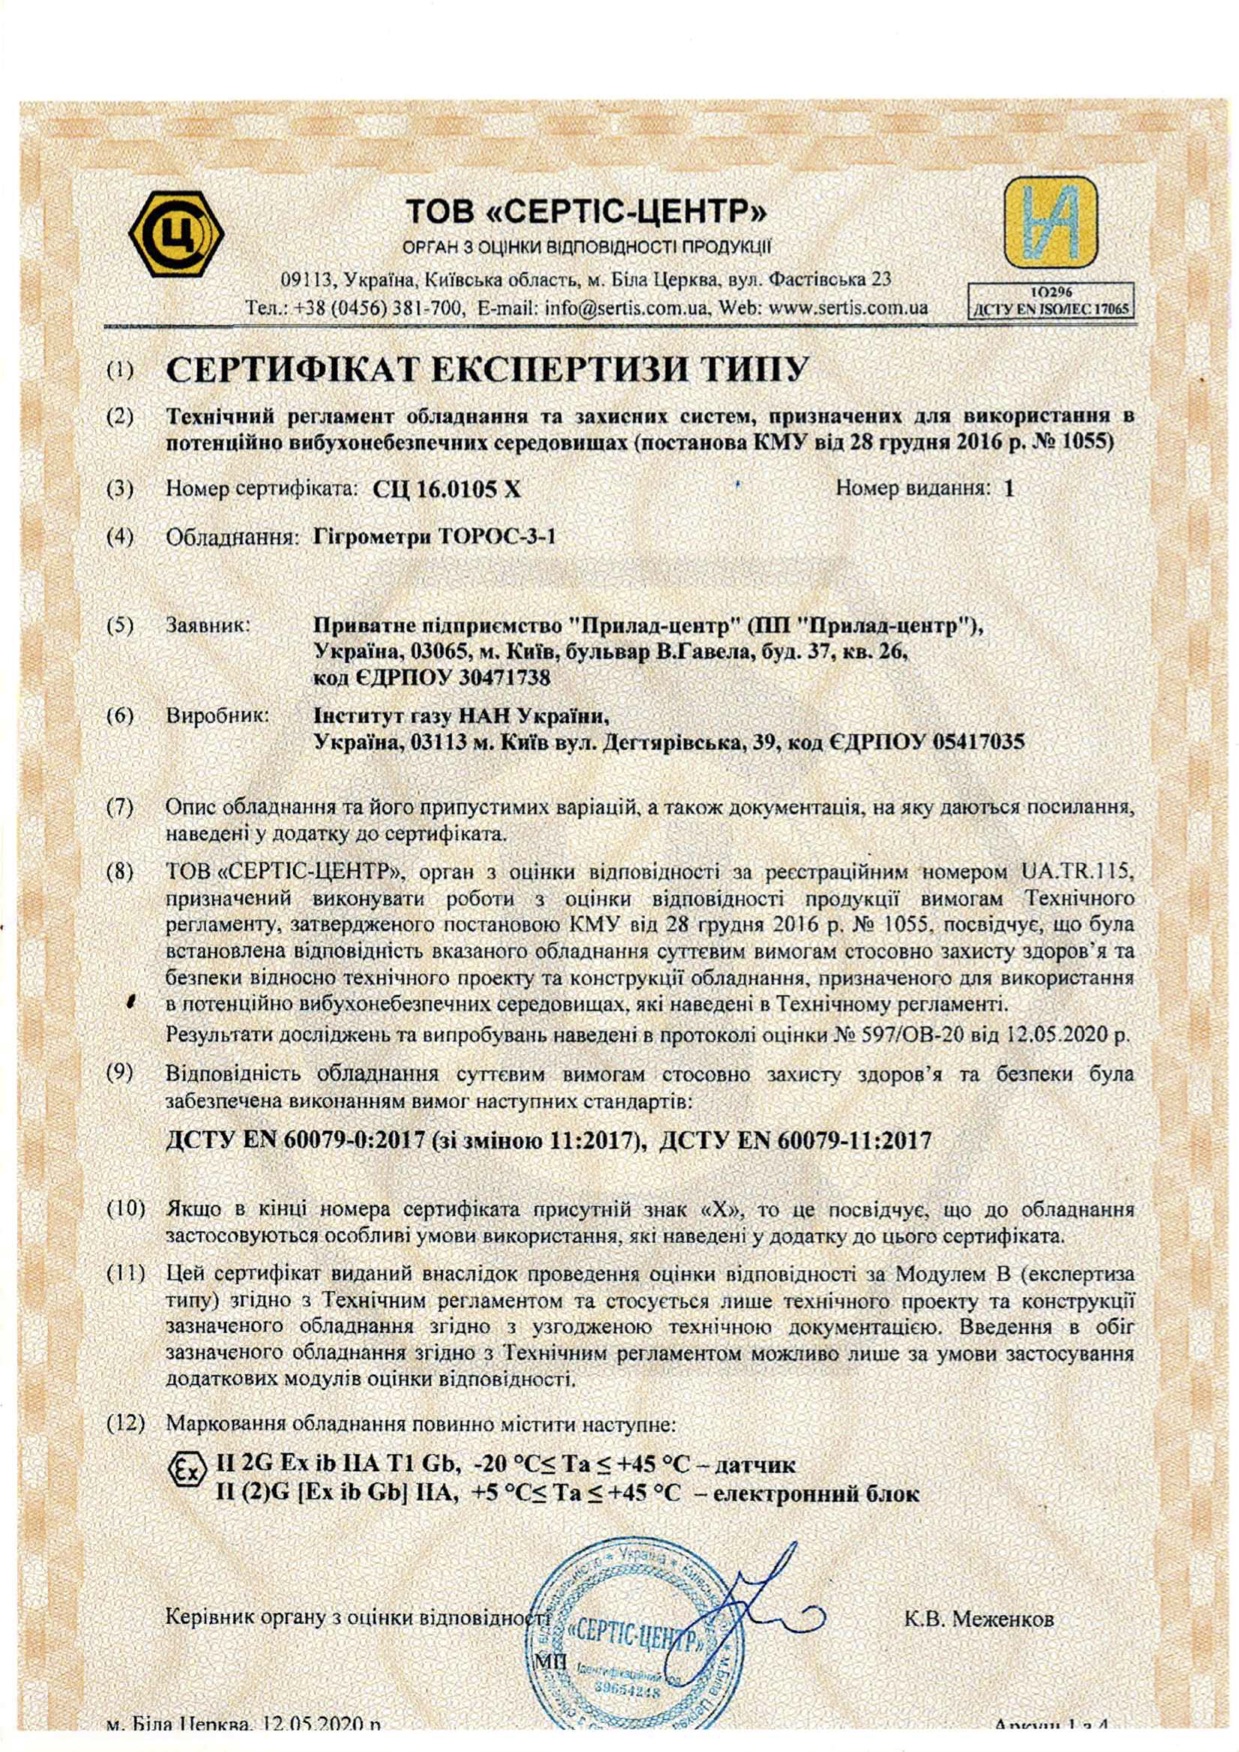 Сертификат экспертизы типа гигрометр ТОРОС-3-1